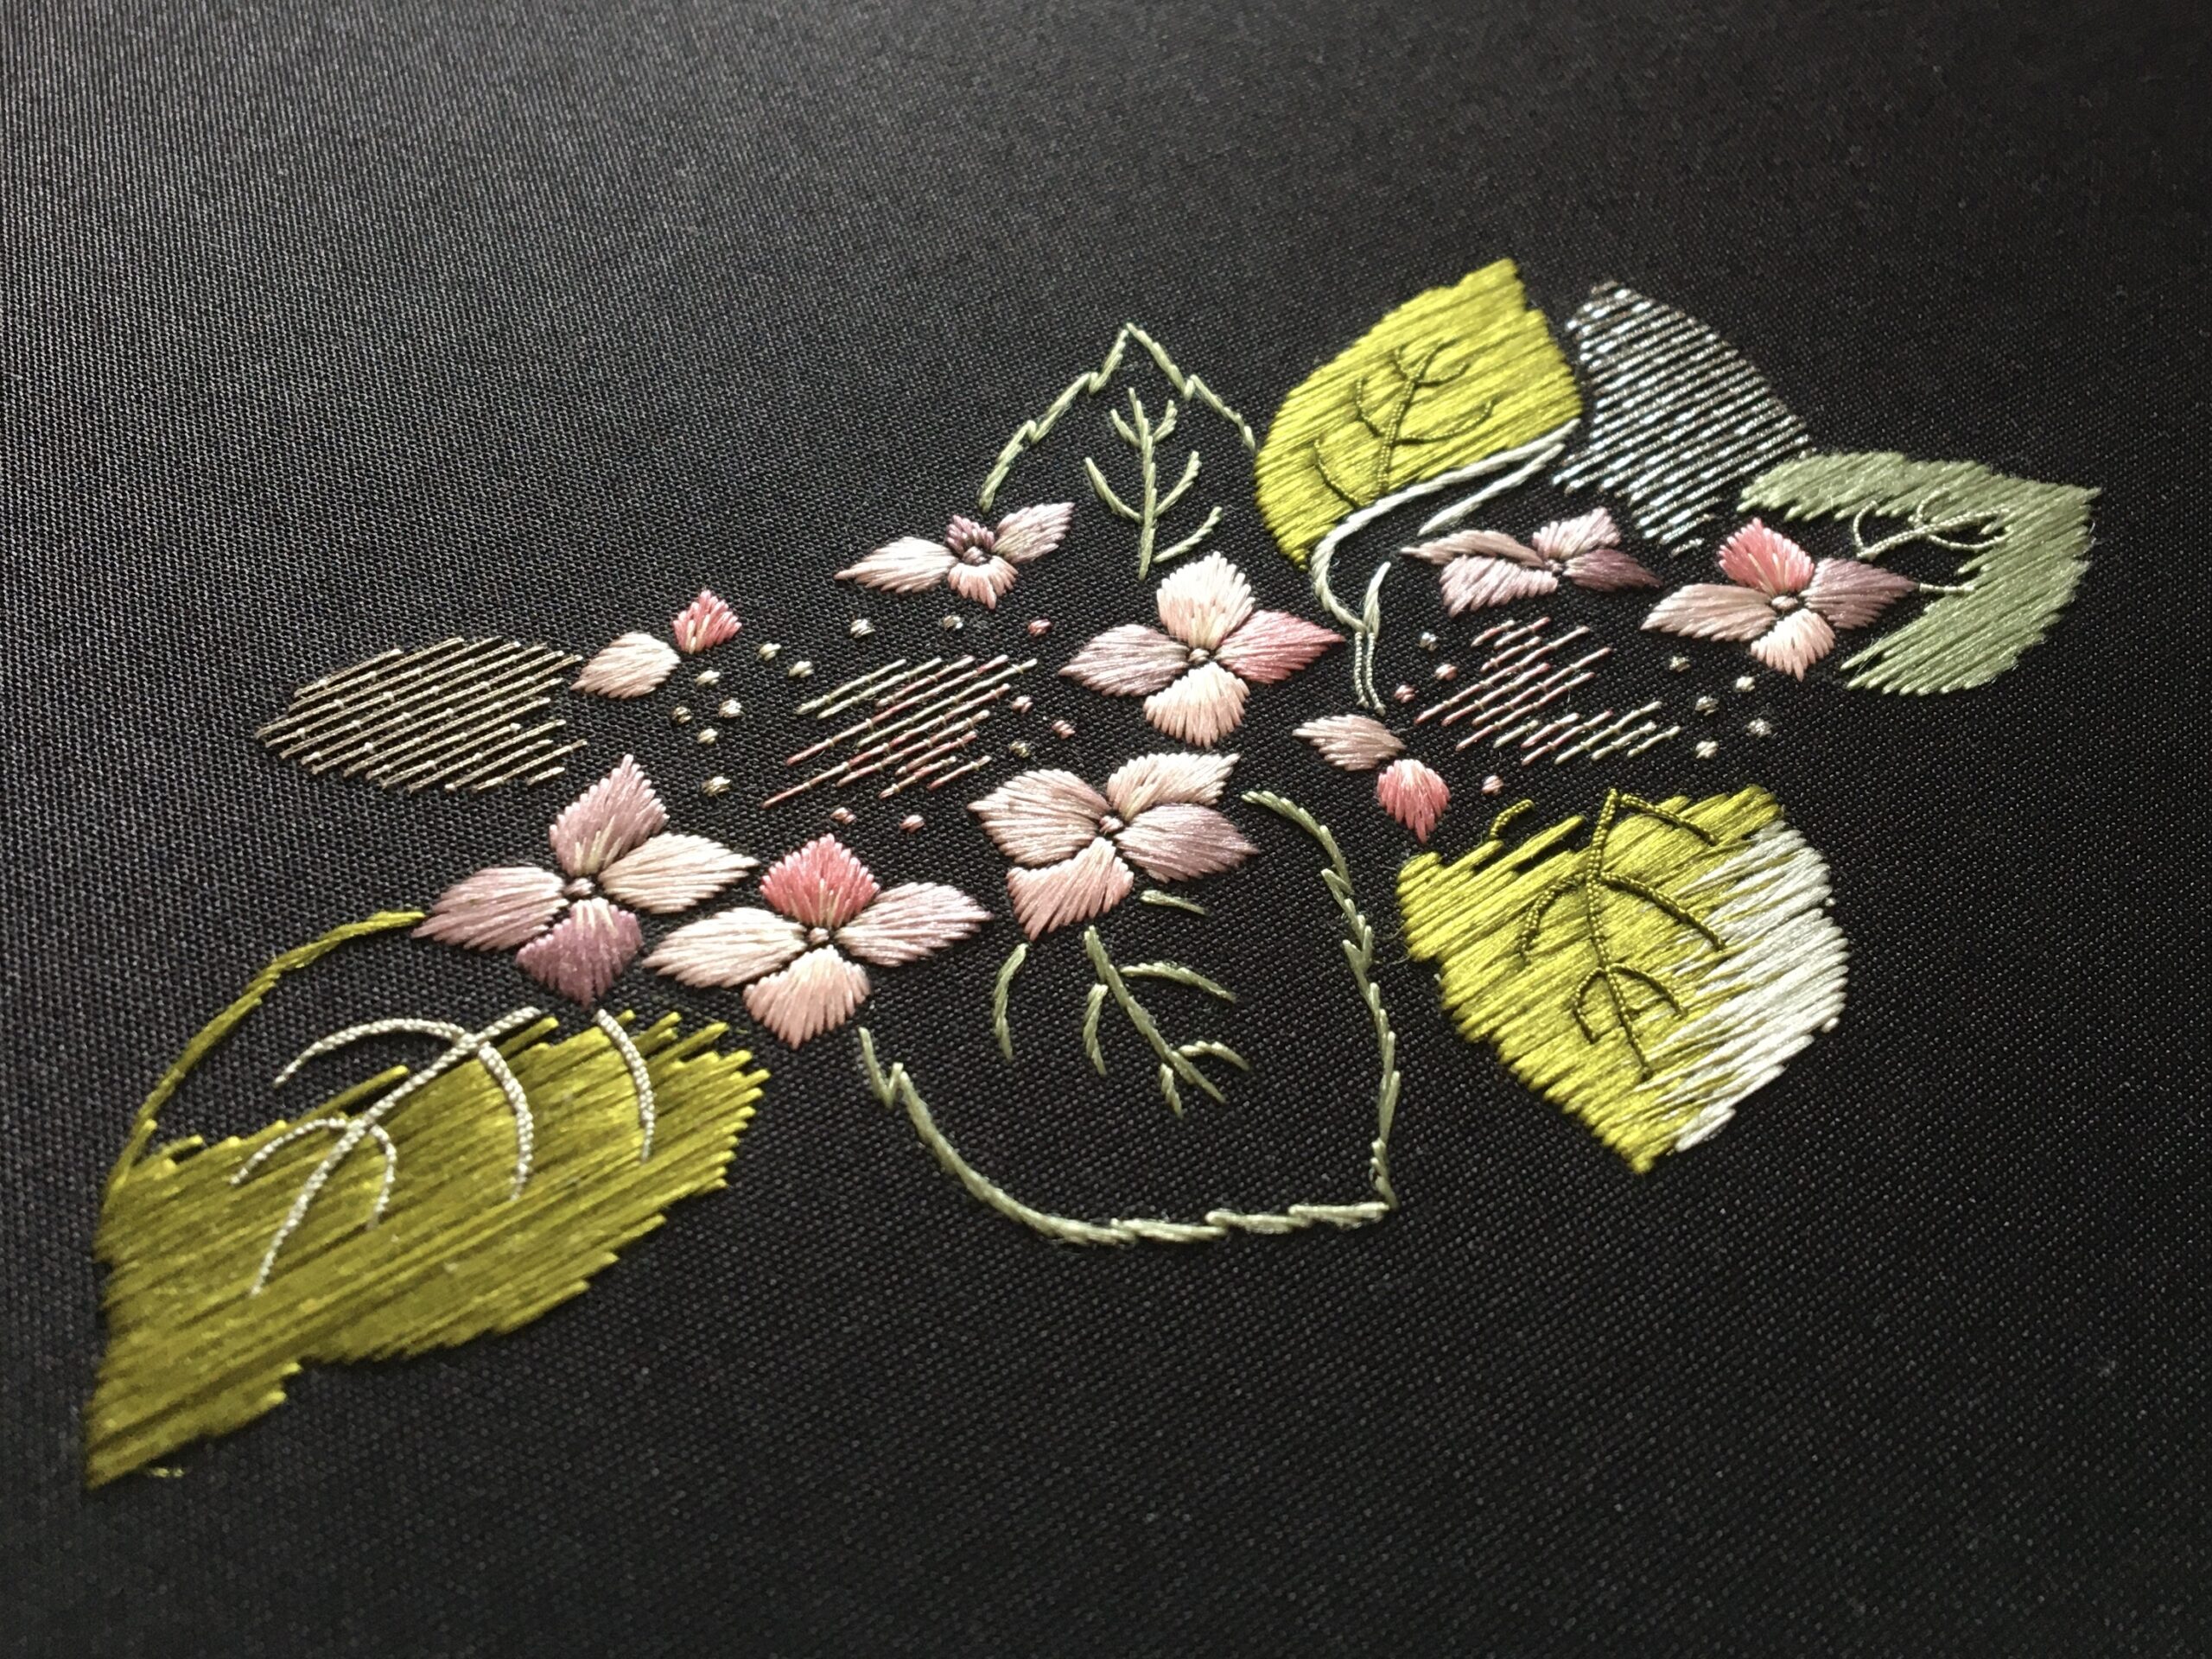 日本刺繍】紫陽花 平糸を使ったグラデーションでみずみずしさを表現